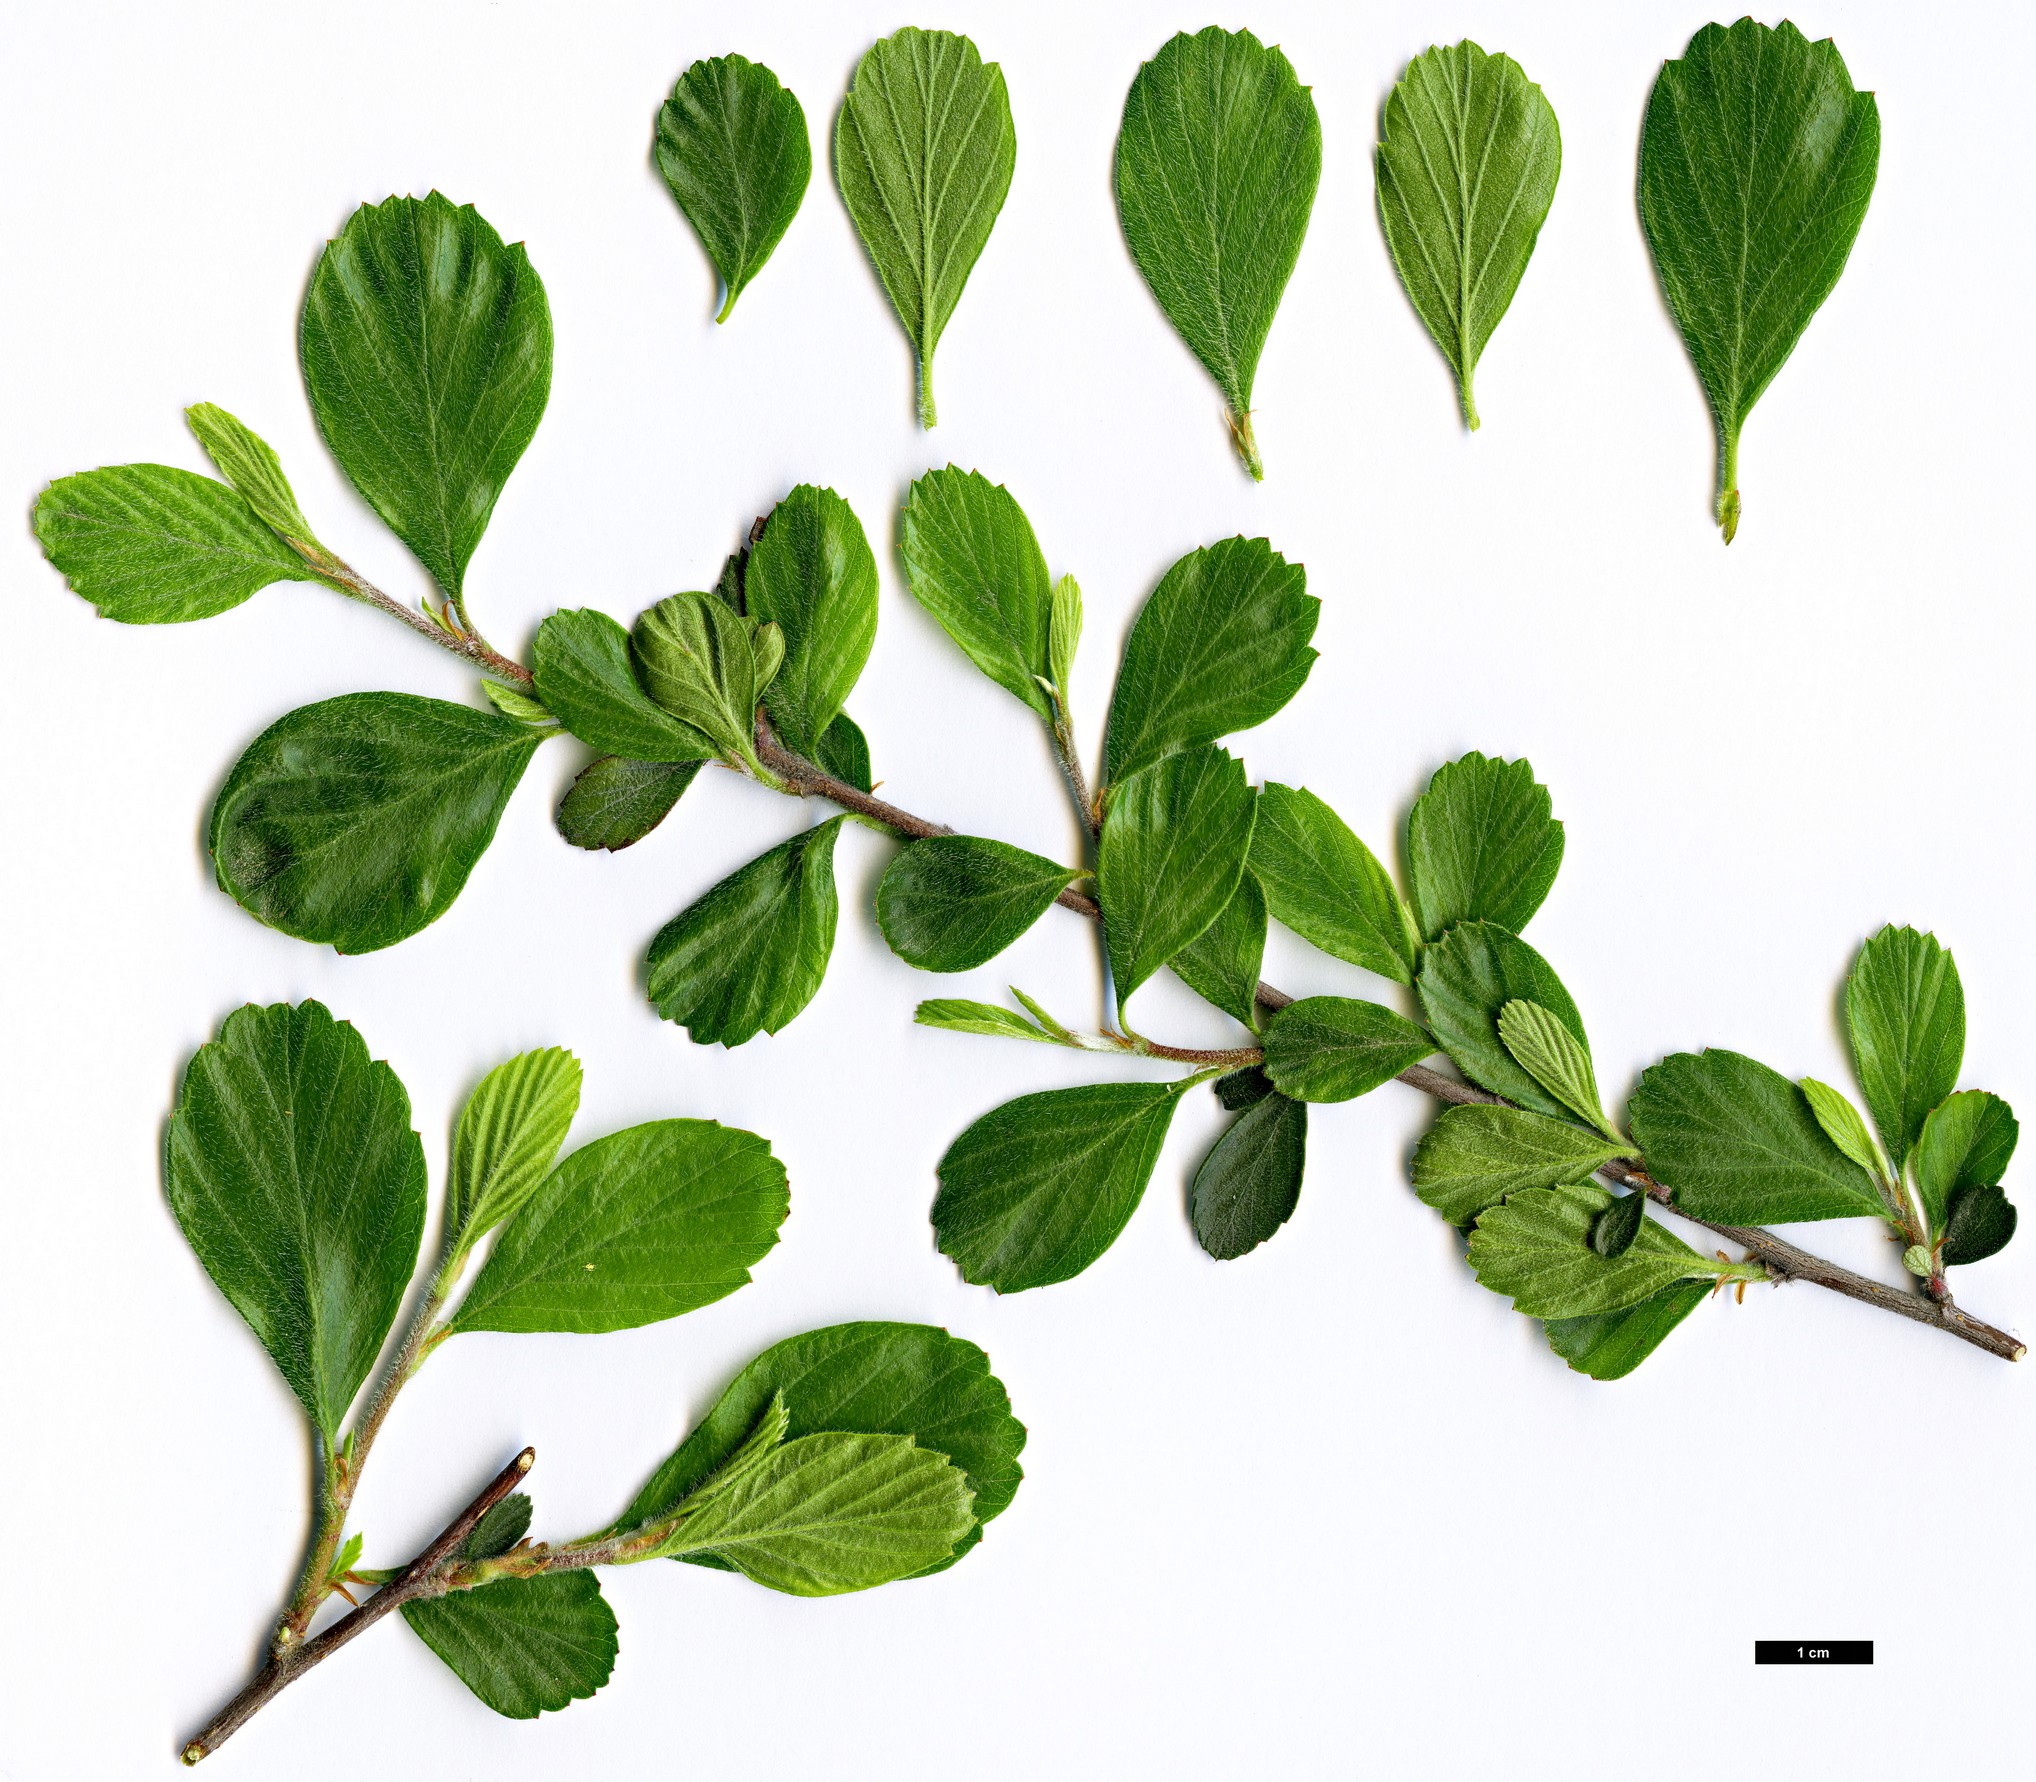 High resolution image: Family: Rosaceae - Genus: Cercocarpus - Taxon: montanus